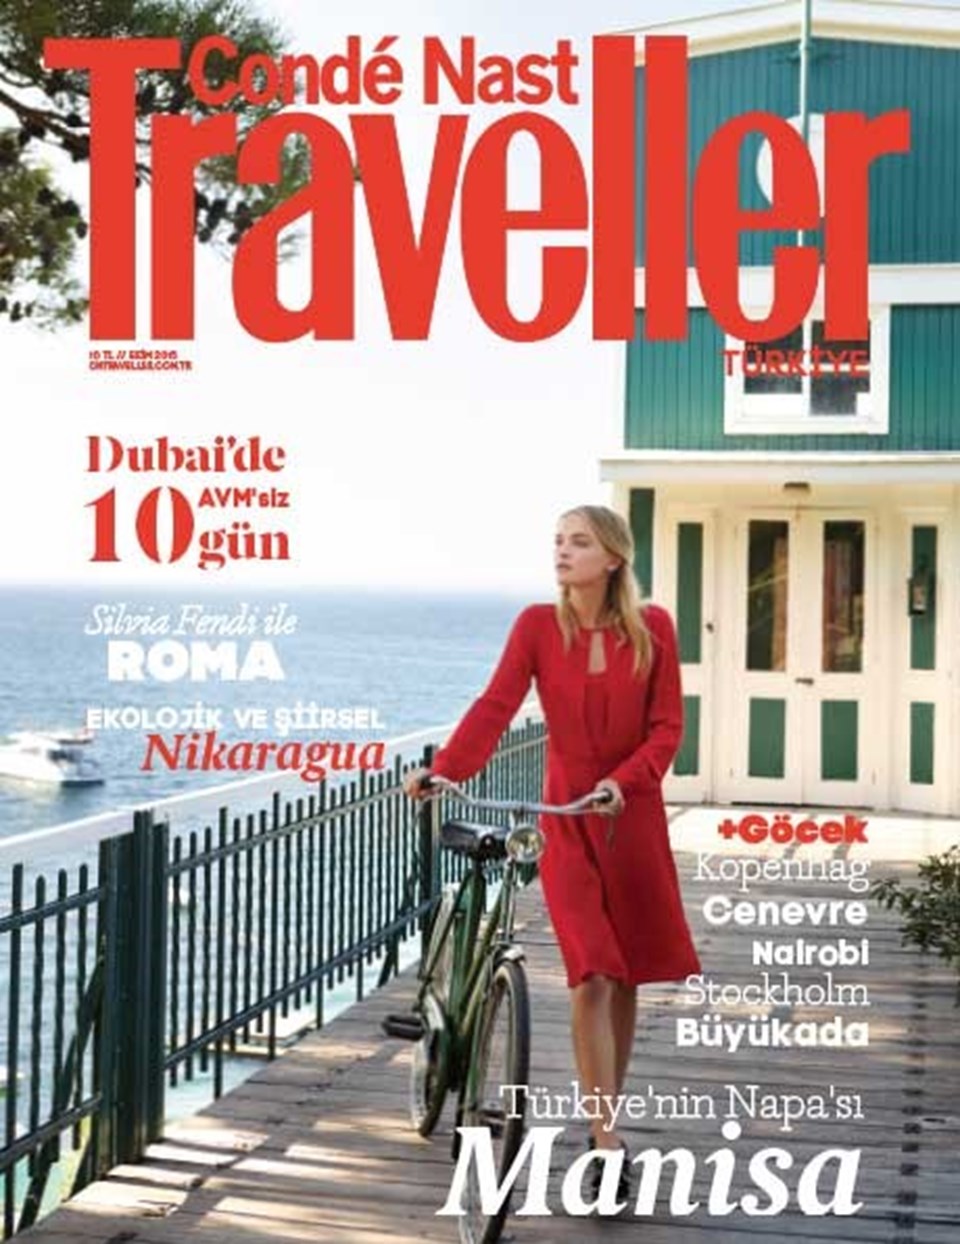 Condé Nast Traveller Türkiye, yazın devam ettiği en güzel 5 sahili seçti - 6